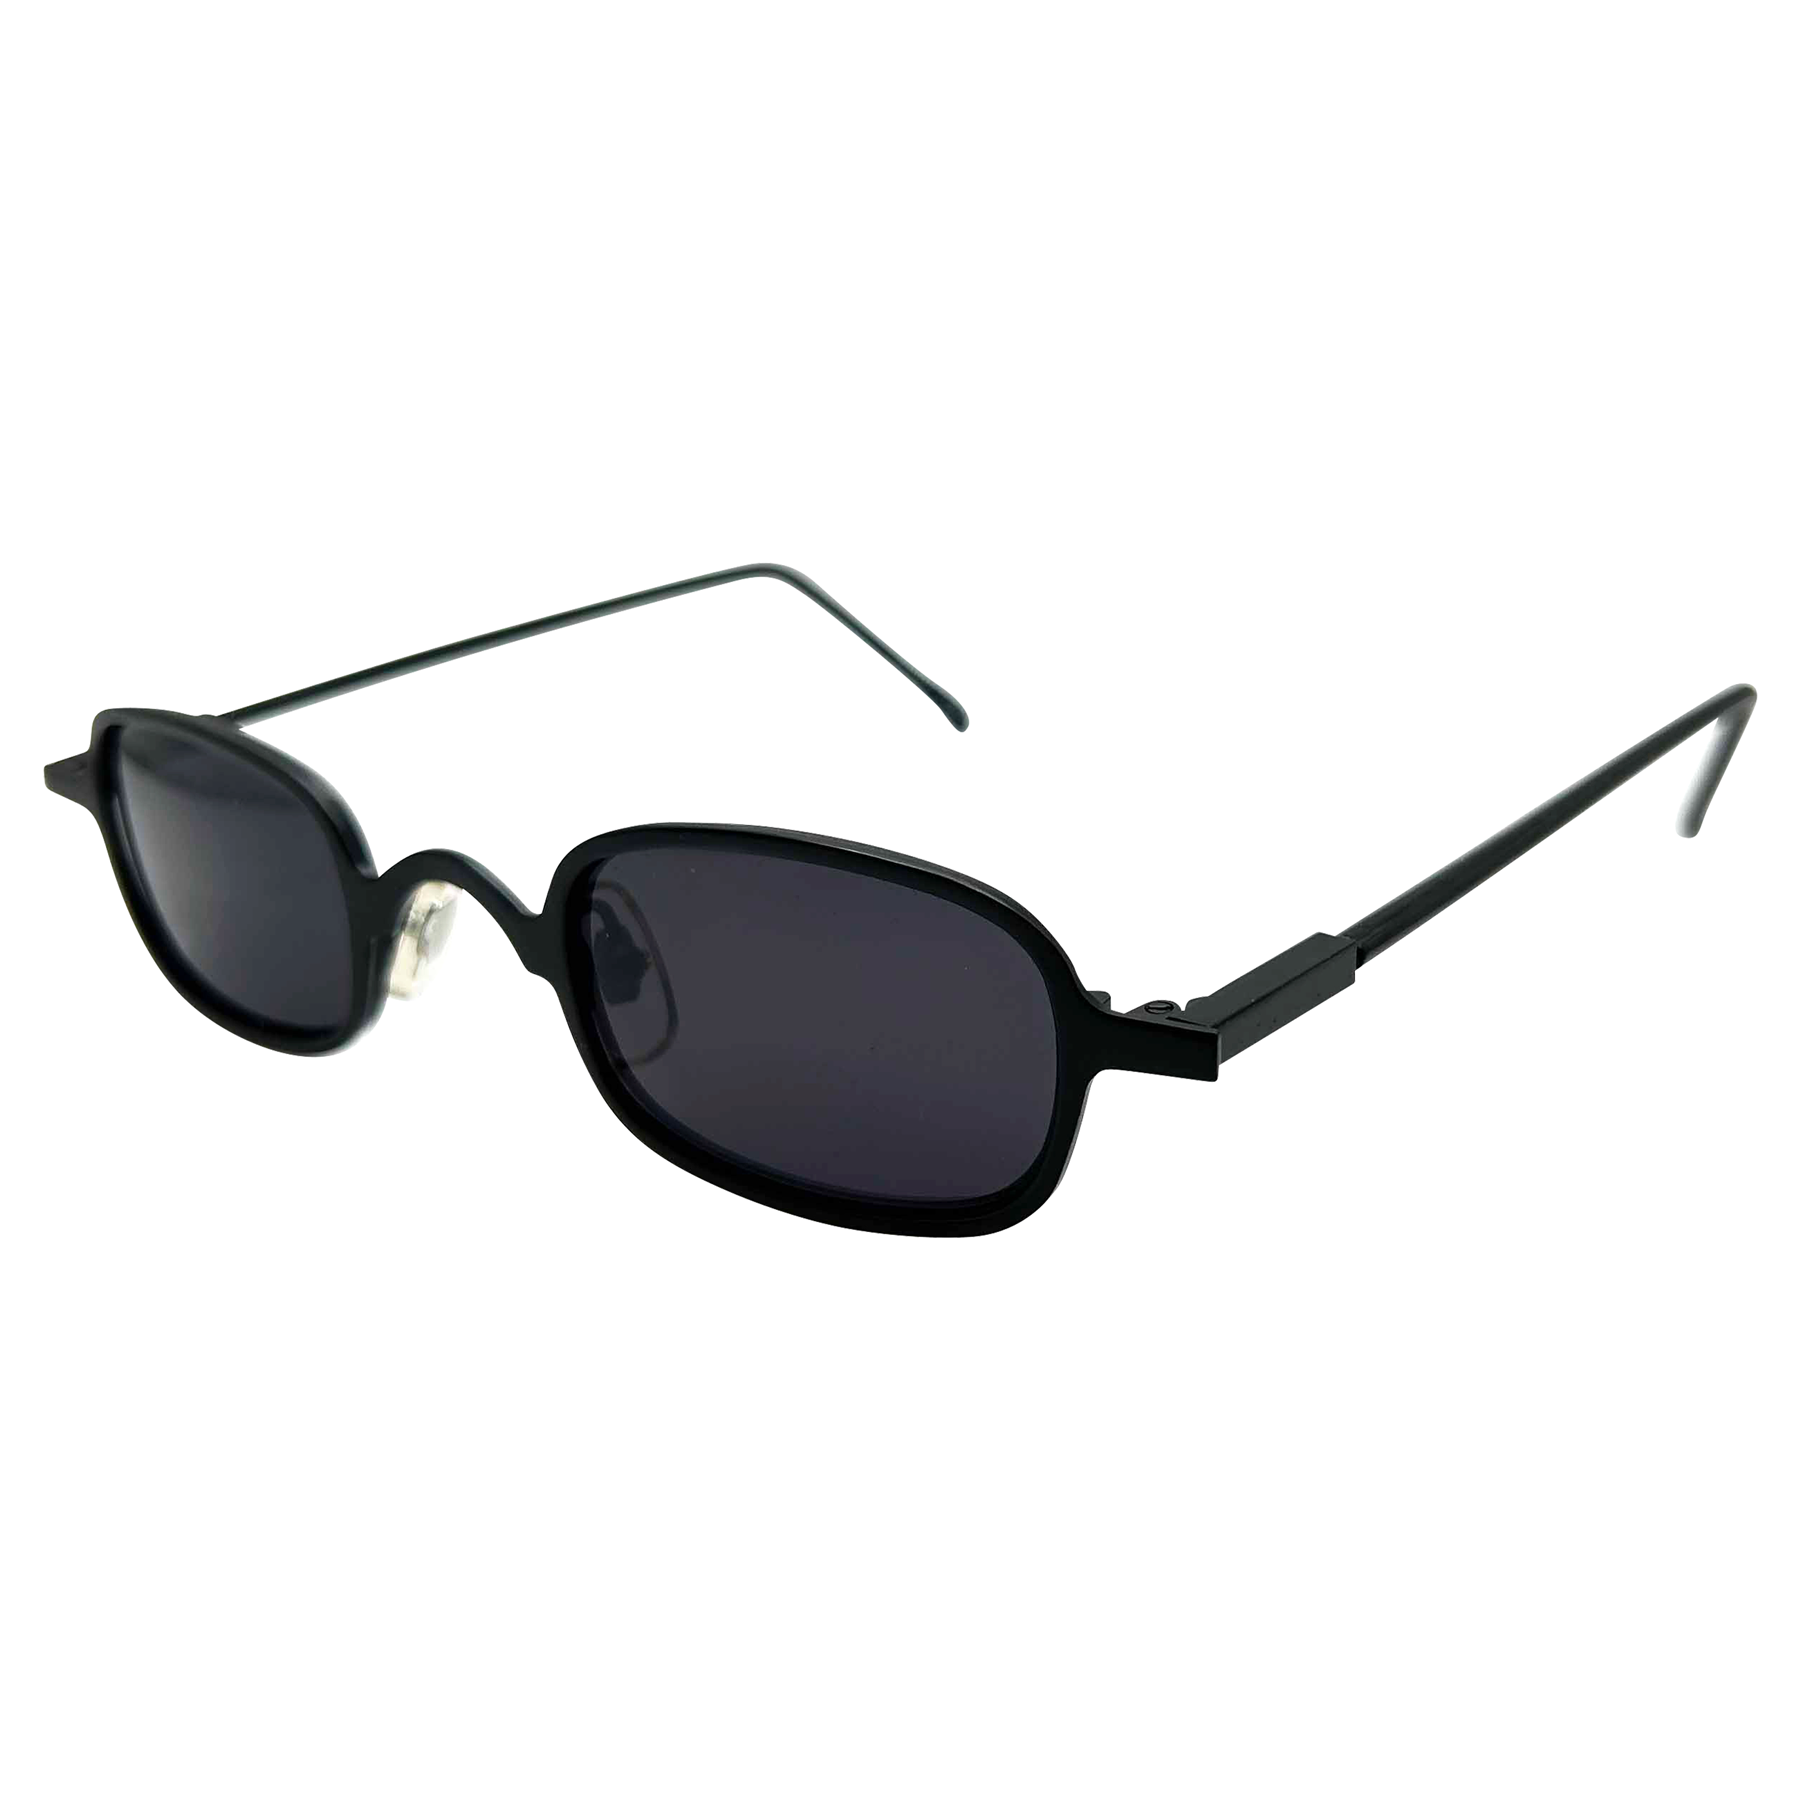 ARROYO Black Square 90s Sunglasses